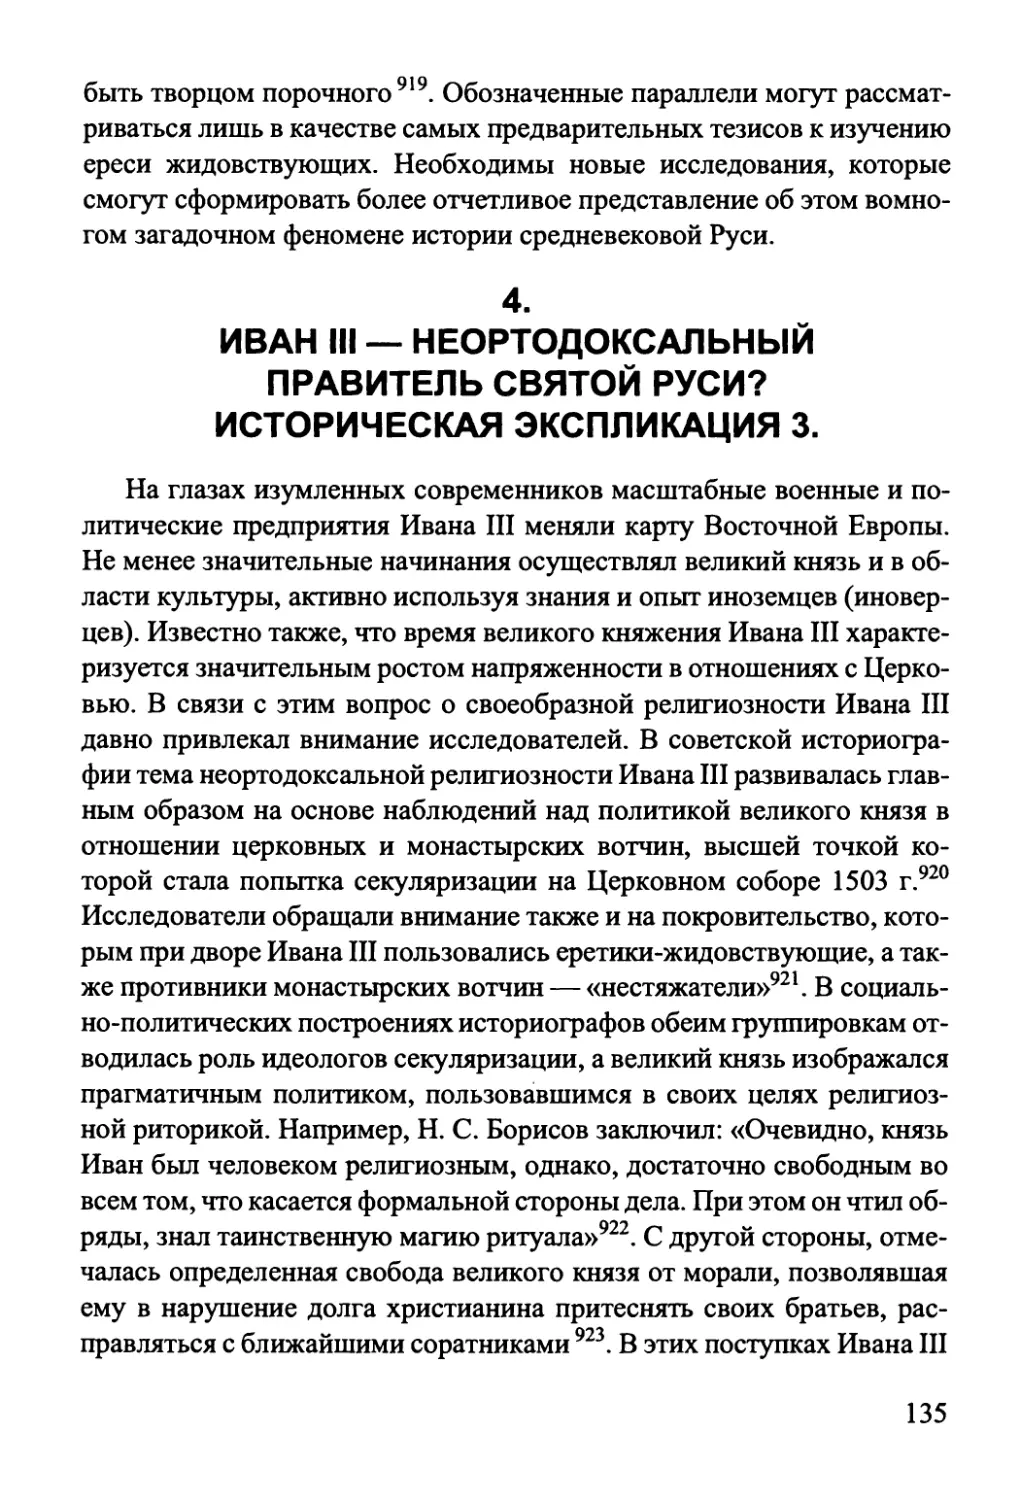 4. Иван III — неортодоксальный правитель Святой Руси? Историческая экспликация 3